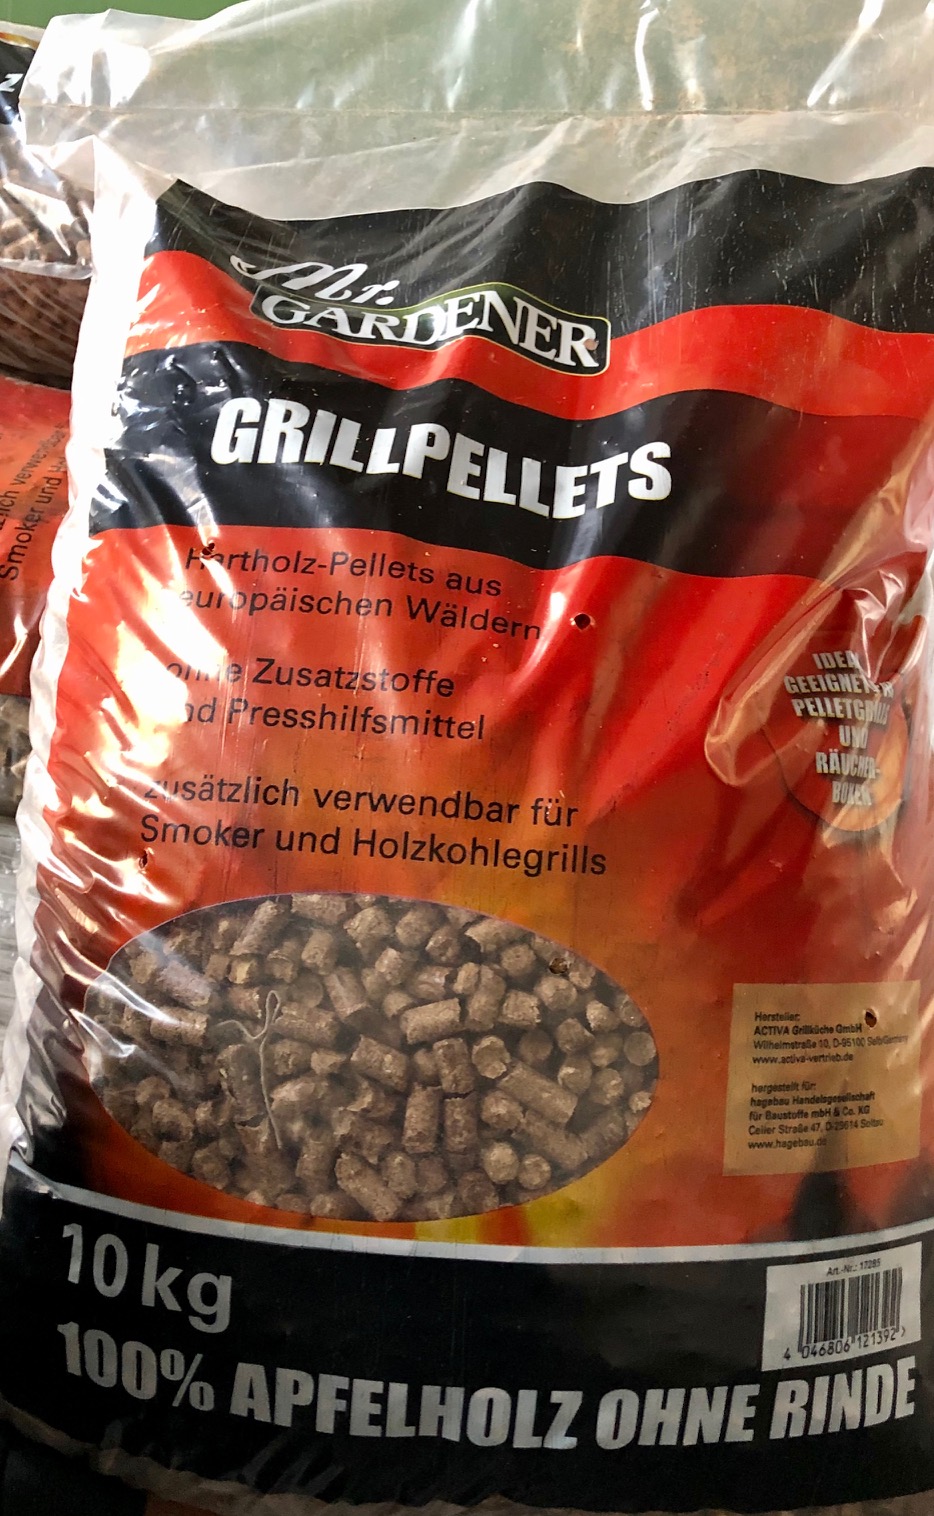 Mr.Gardener Grillpellets im Beutel - Mr.Gardener Grillpellets im Beutel